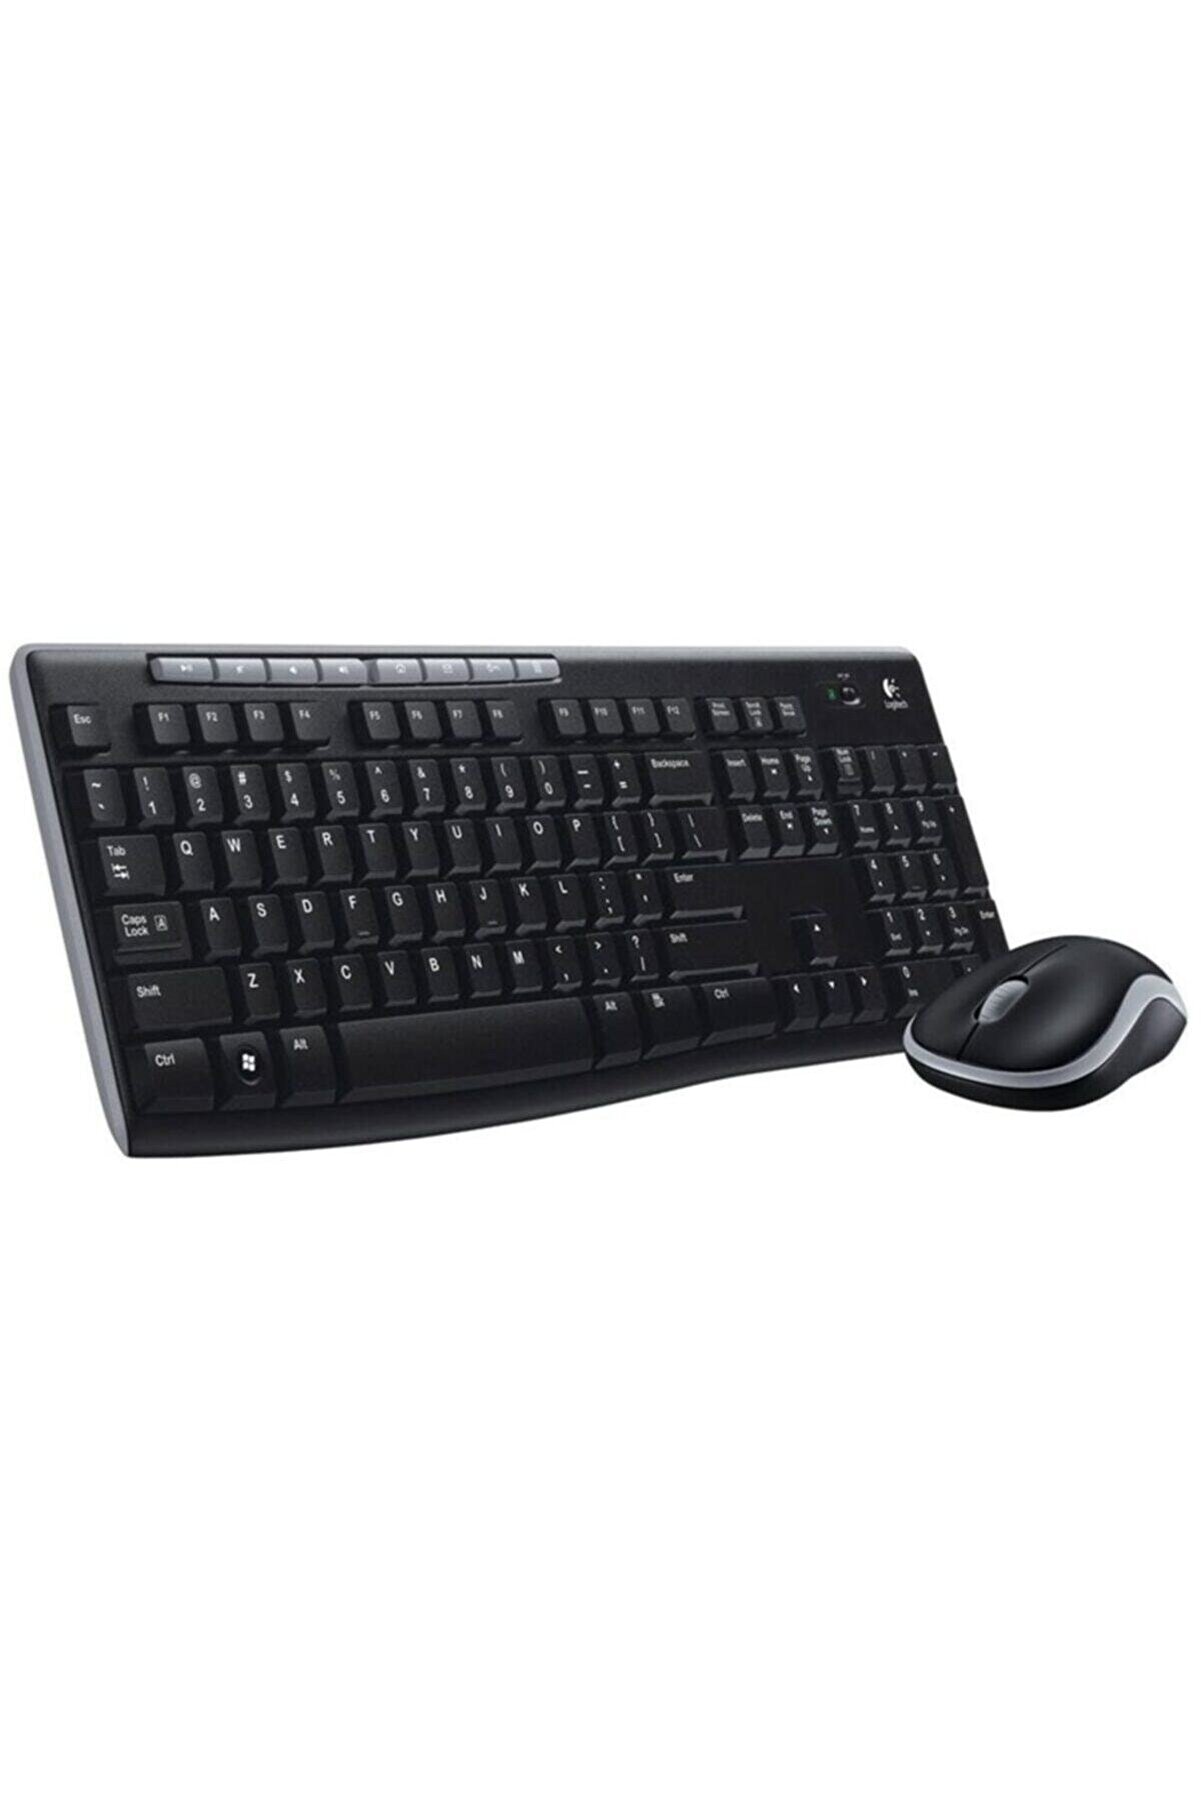 logitech MK270 Kablosuz USB Alıcılı Türkçe Q Klavye Mouse Seti - Siyah